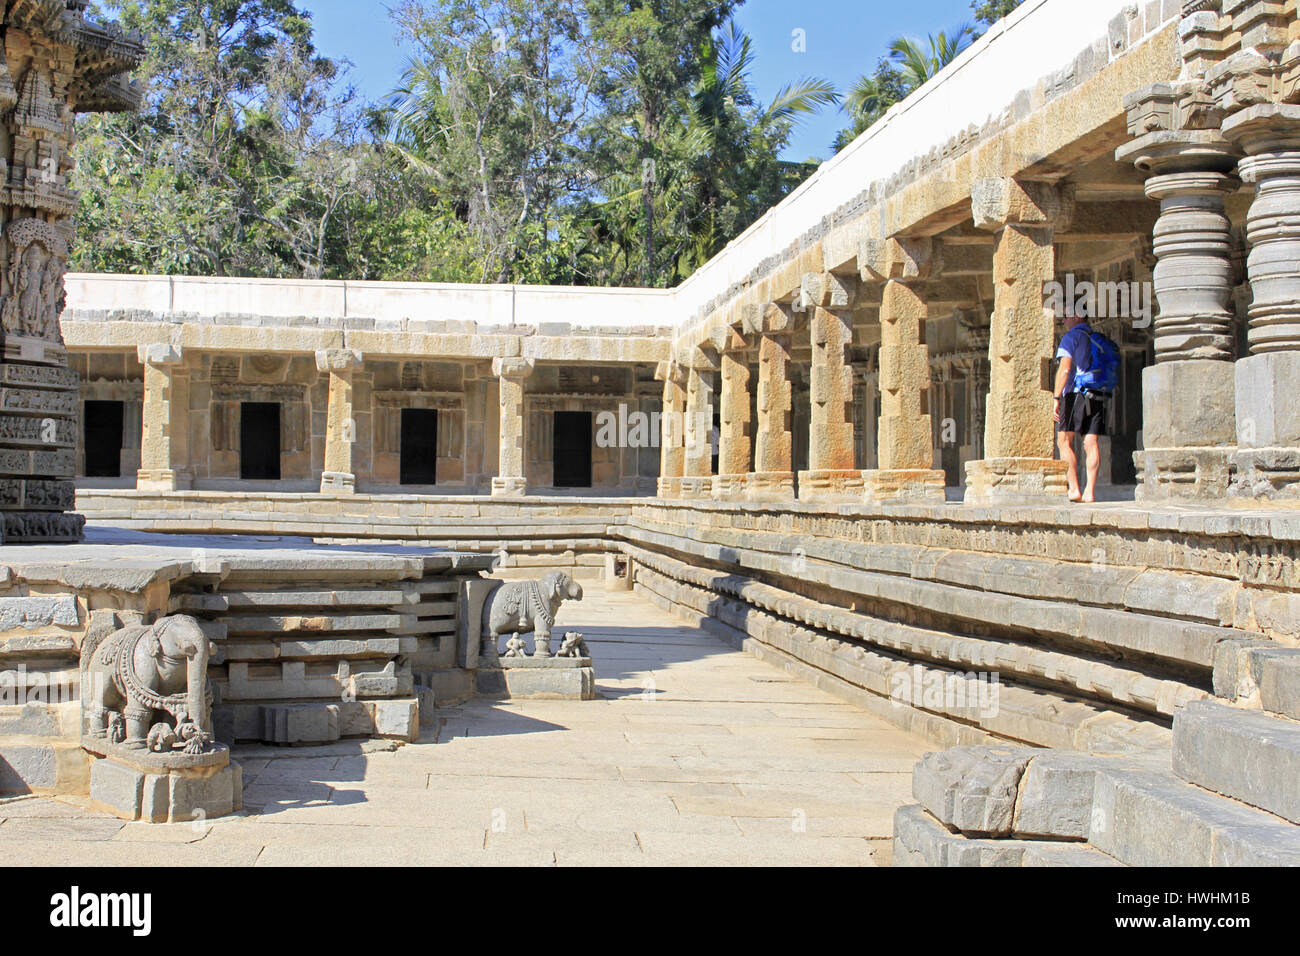 Vue de côté de la Colonnade de la recluse depuis la cour du corridor de l'Architecture Hoysala, Temple Chennakesava, Somanathpur, Karnataka, Ind Banque D'Images